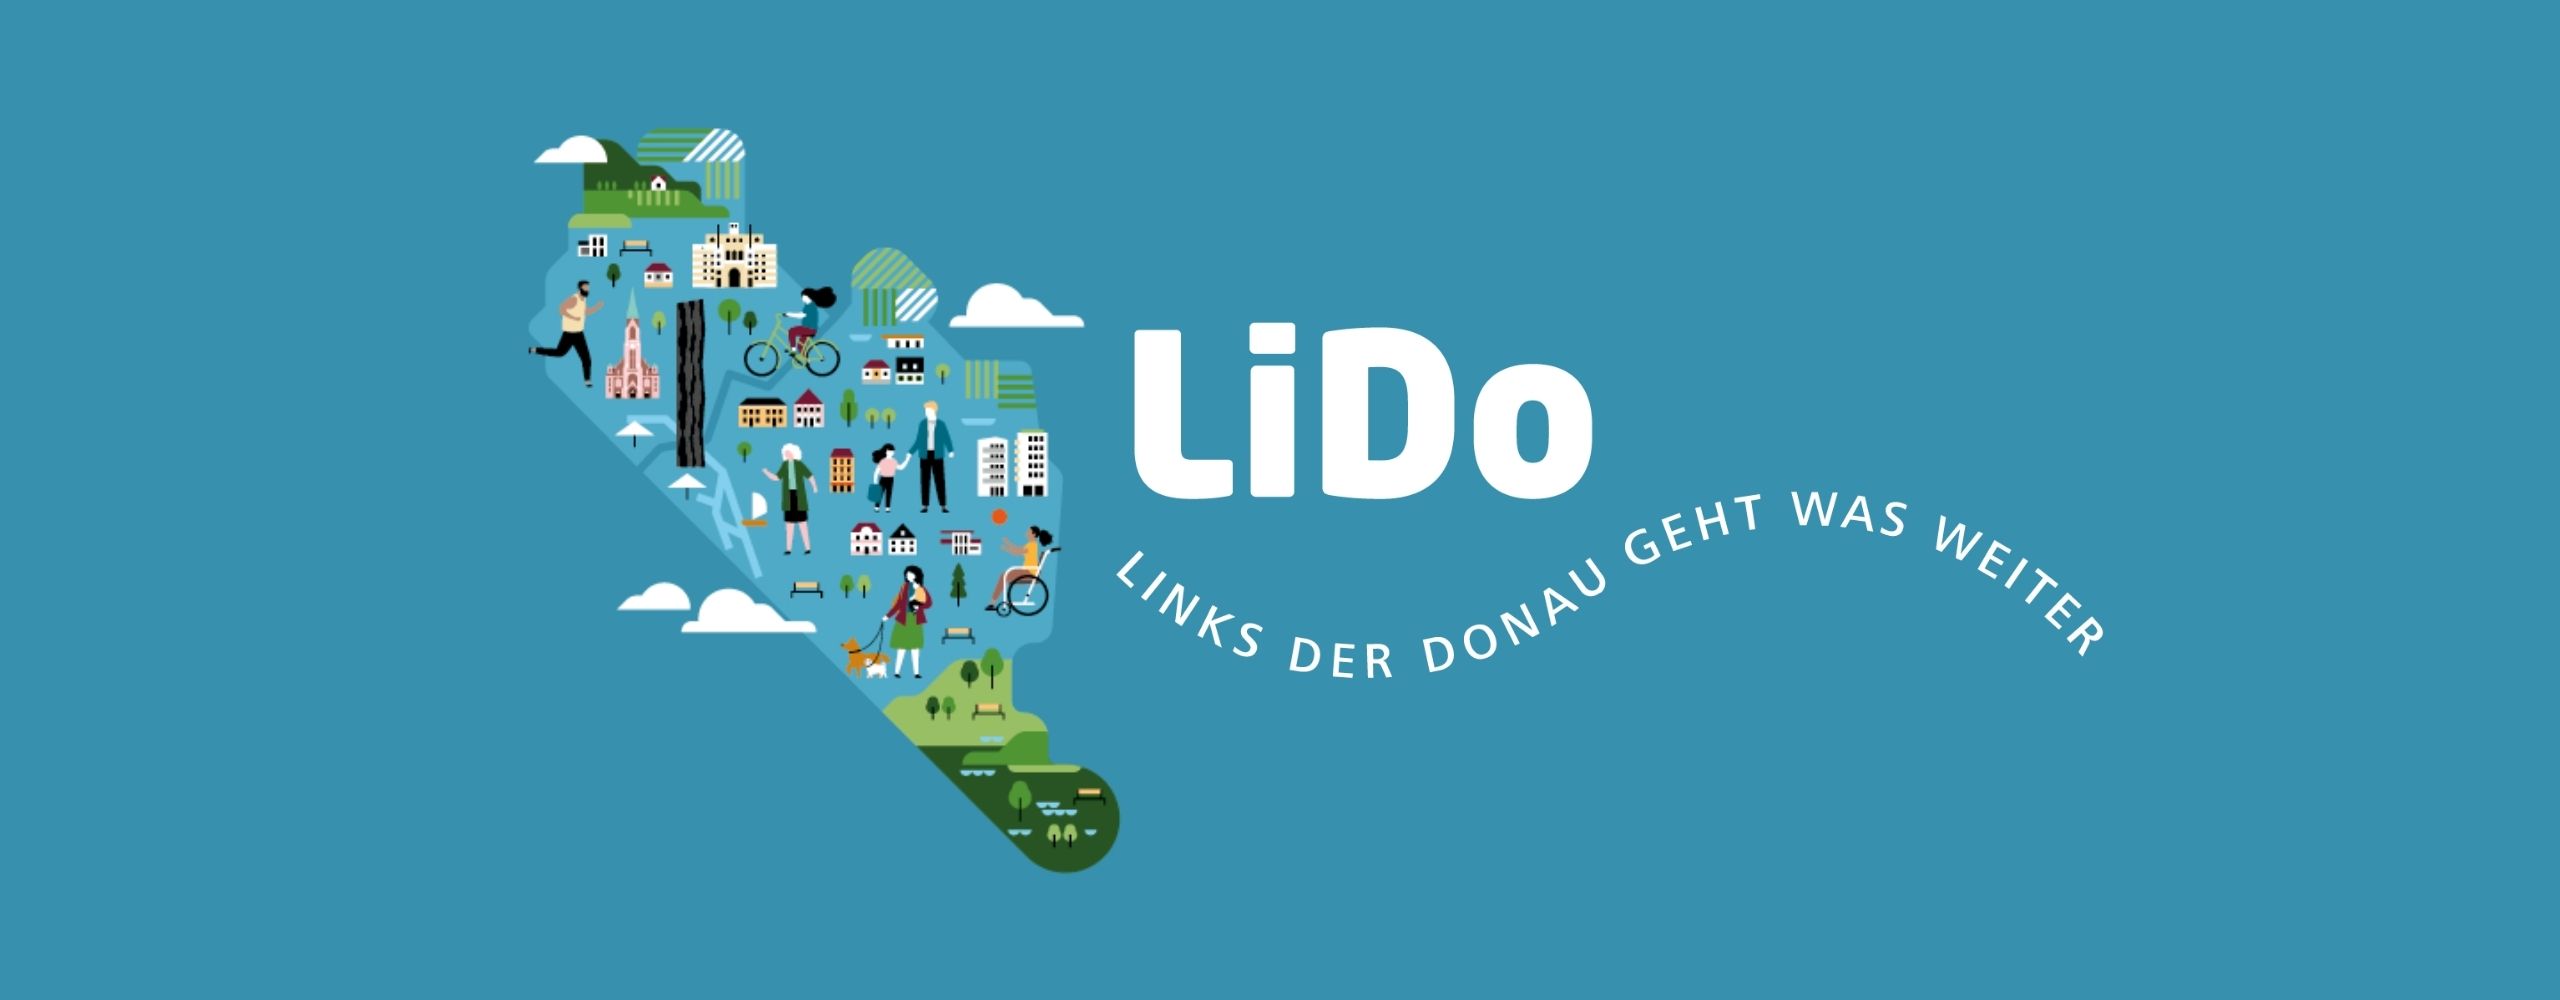 Schriftzug "LiDo - Links der Donau geht was weiter" mit Illustration